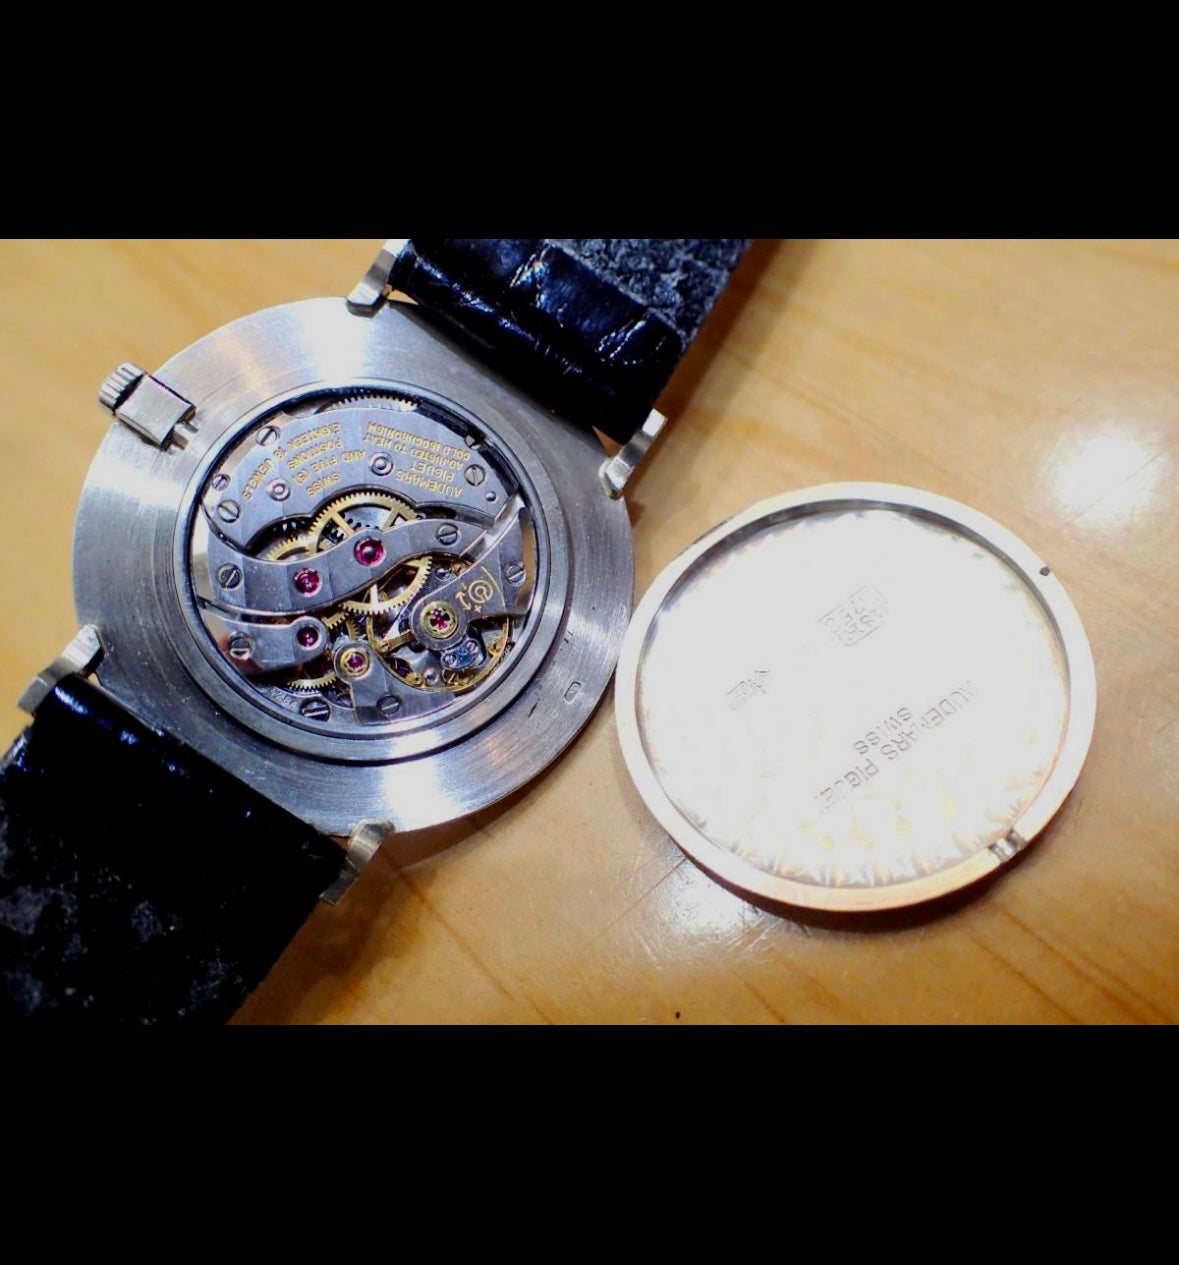 Audemars Piguet White Gold Ultra thin dress watch, Caliber 2001 from 1970's